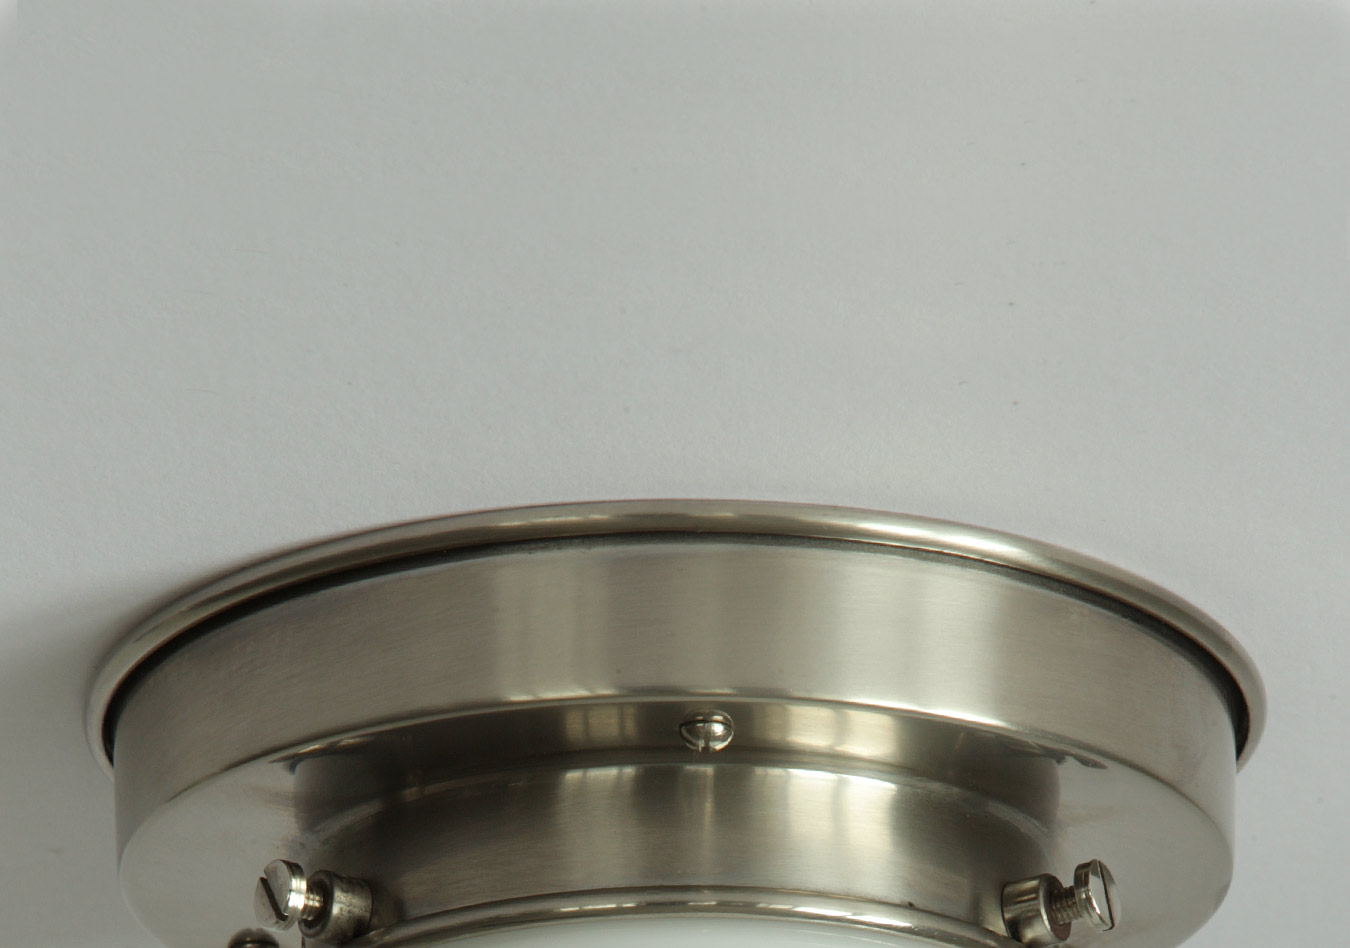 Diskus-Deckenlampe mit spitzem Art déco-Opalglas Ø 30/50 cm: Deckenteil des kleinen Modells, Messing matt vernickelt